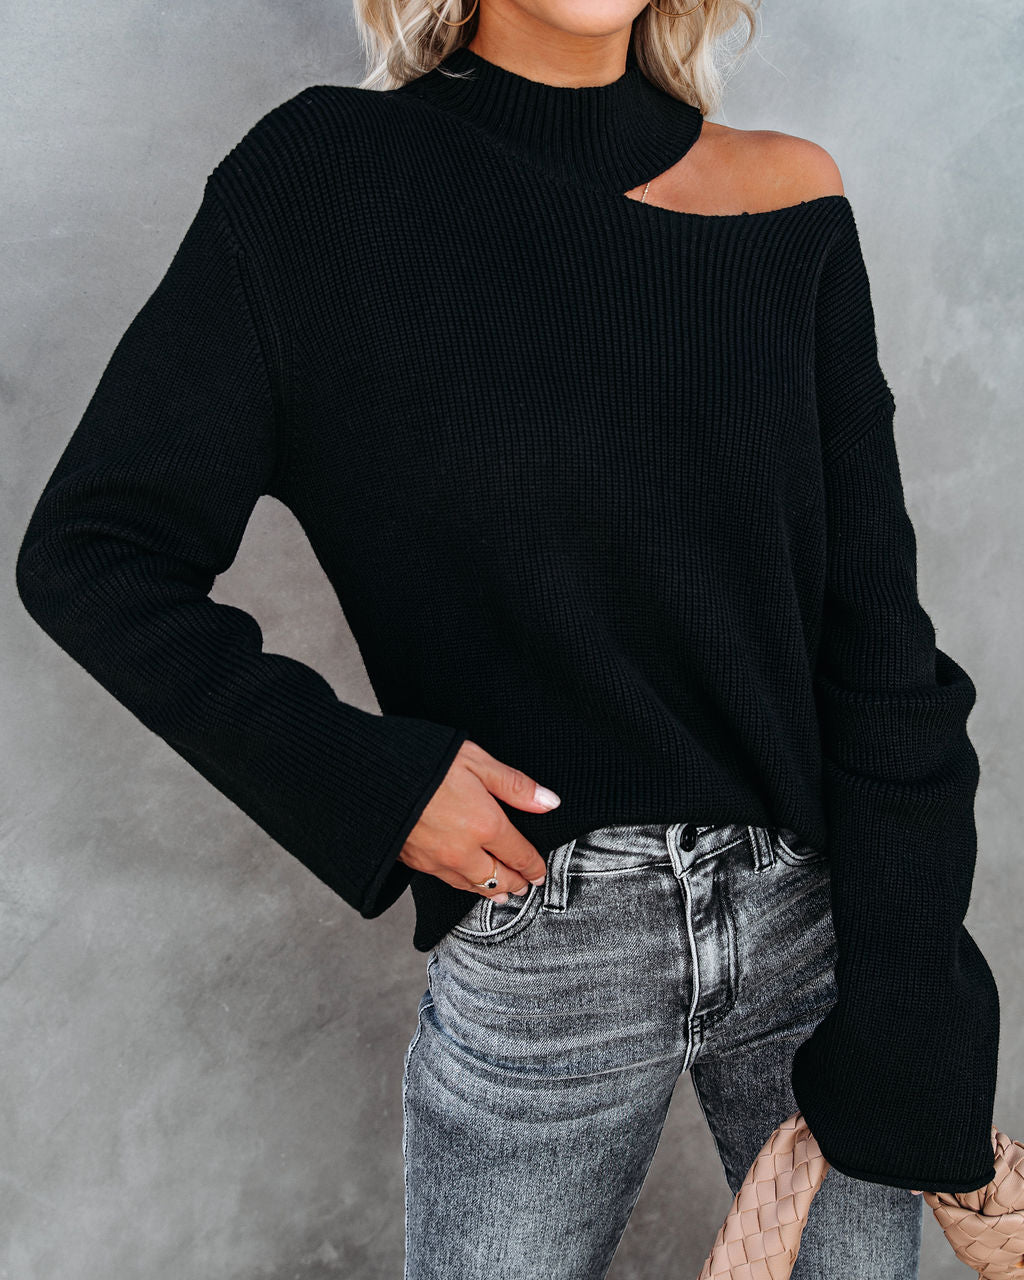 Indulgence Choker Cutout Sweater - Black